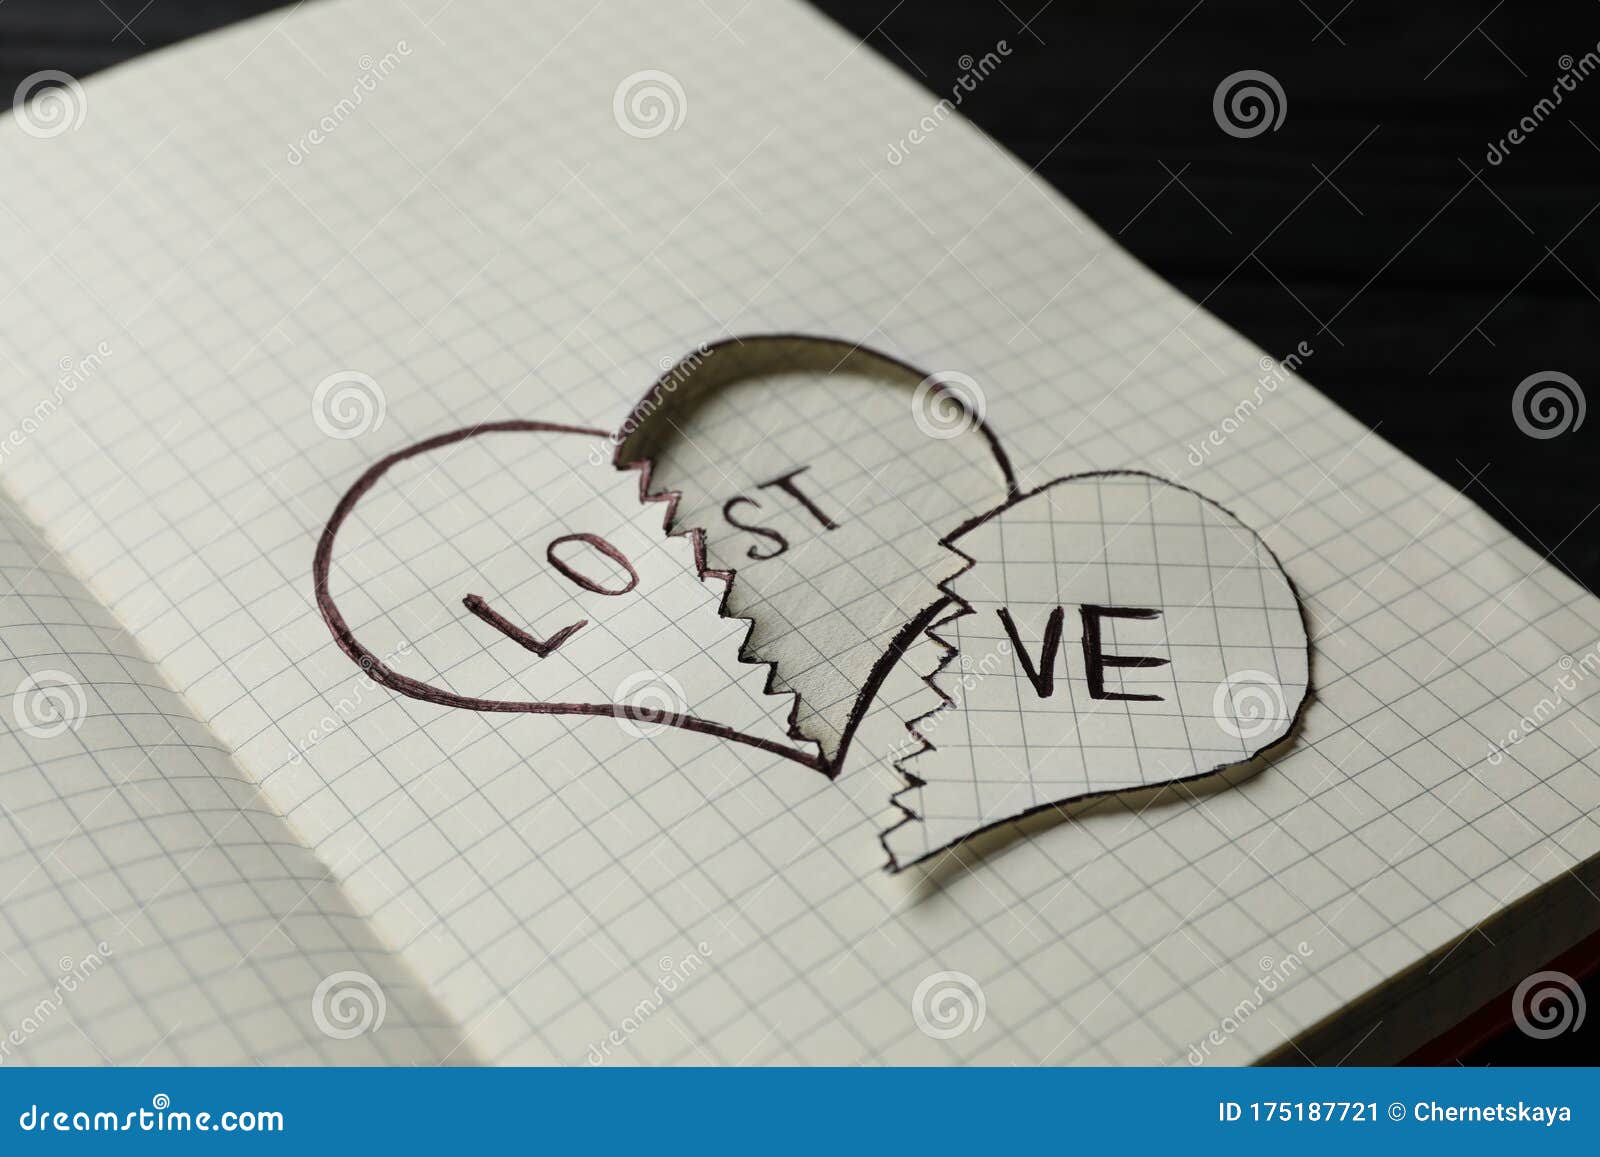 Broken Heart Draw Vector Images (over 1,700)